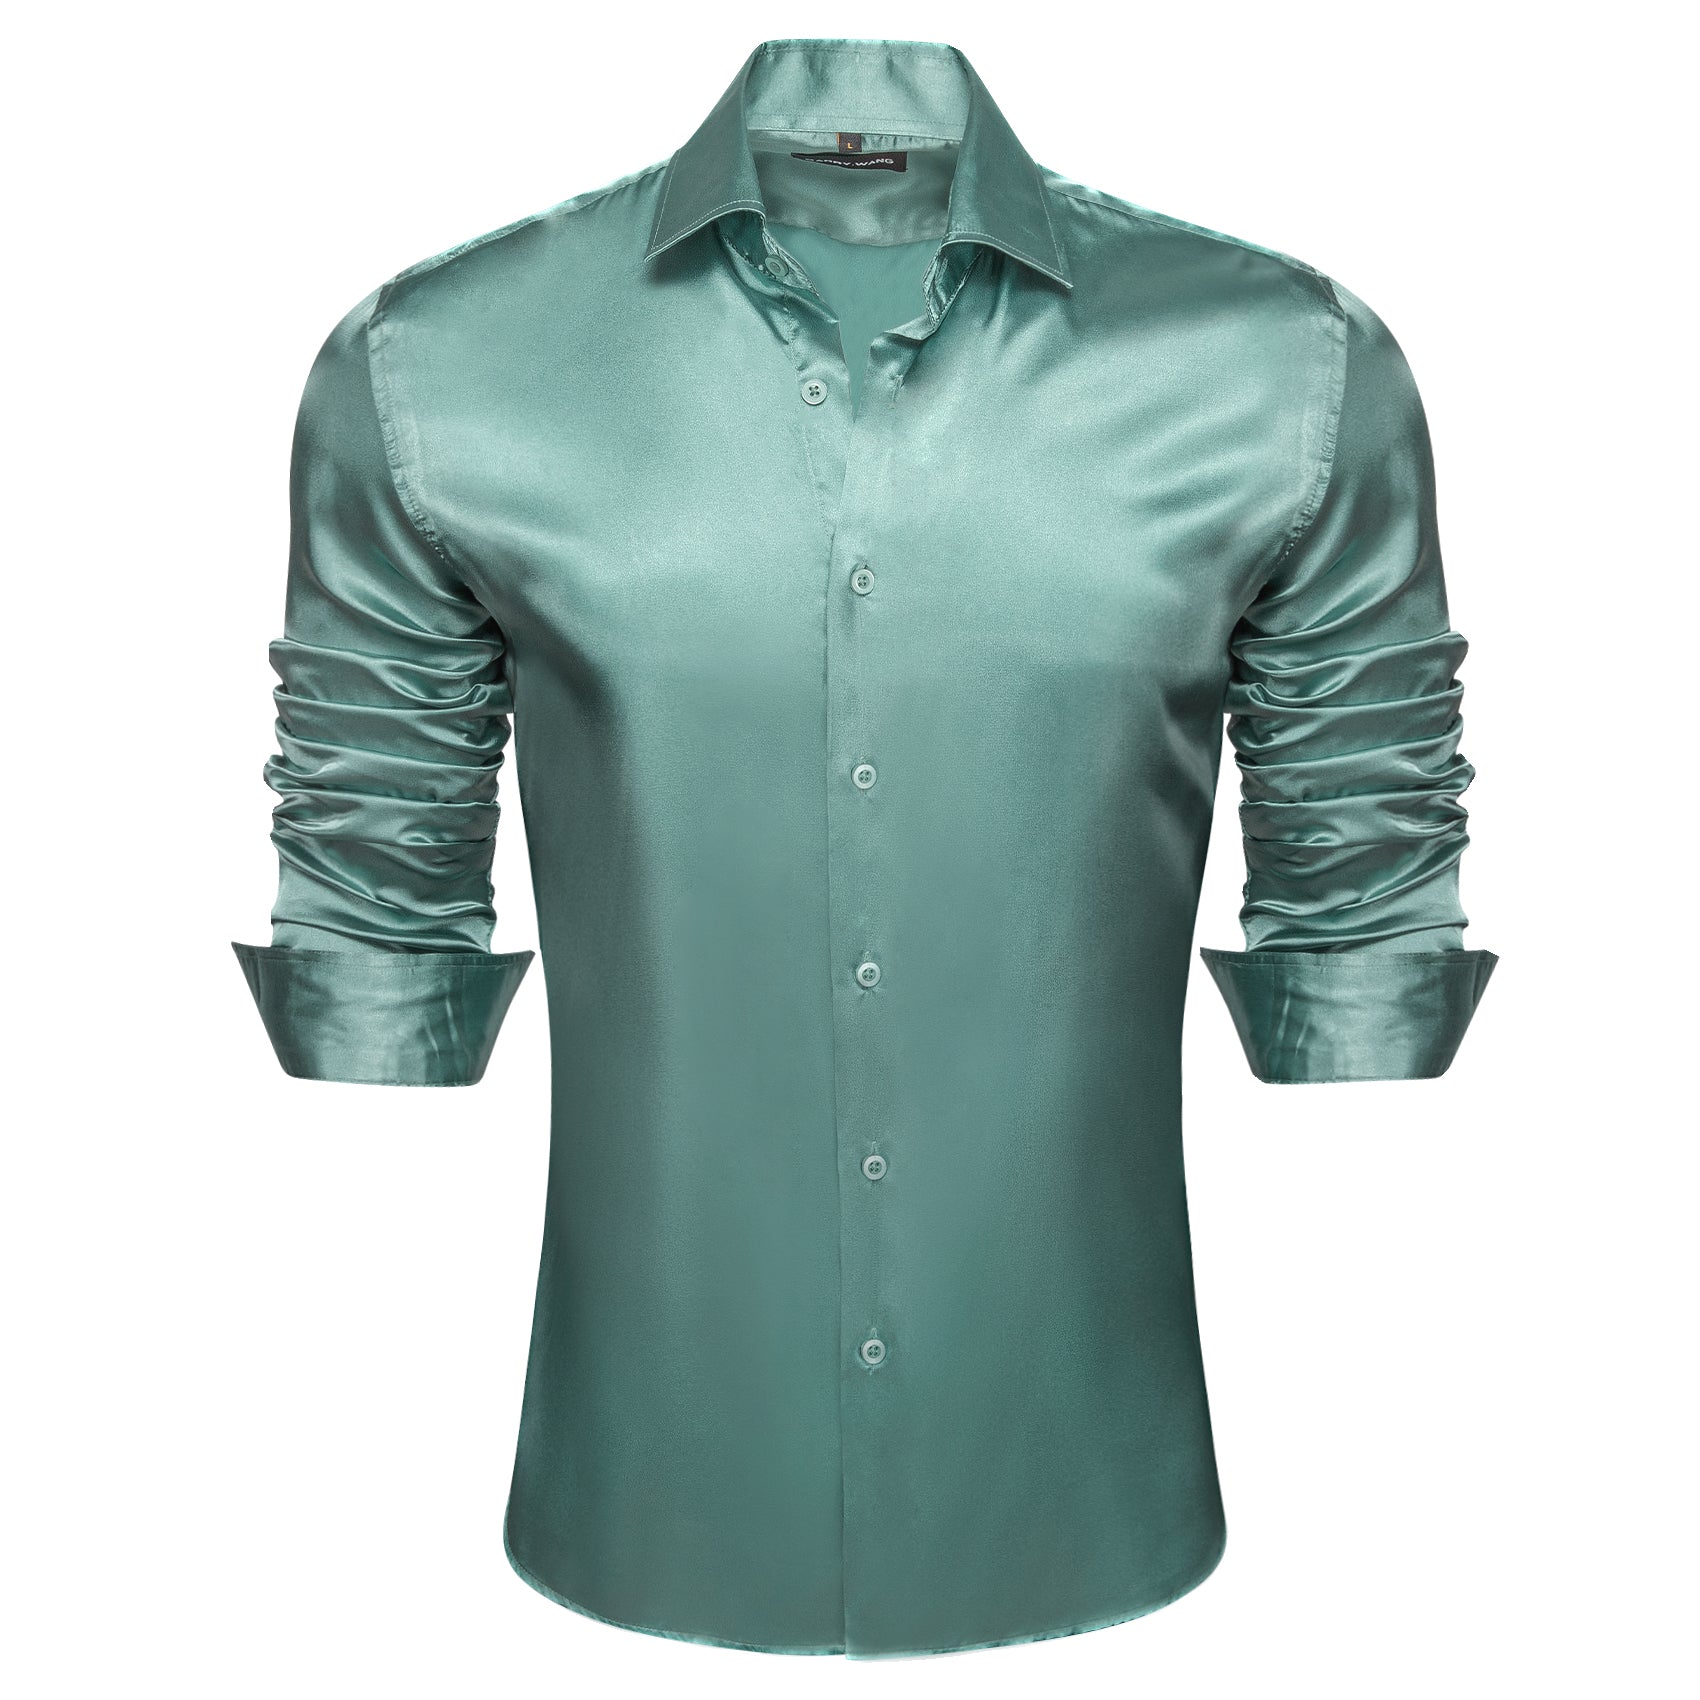 Barry.wang Teal Blue Solid Silk Shirt